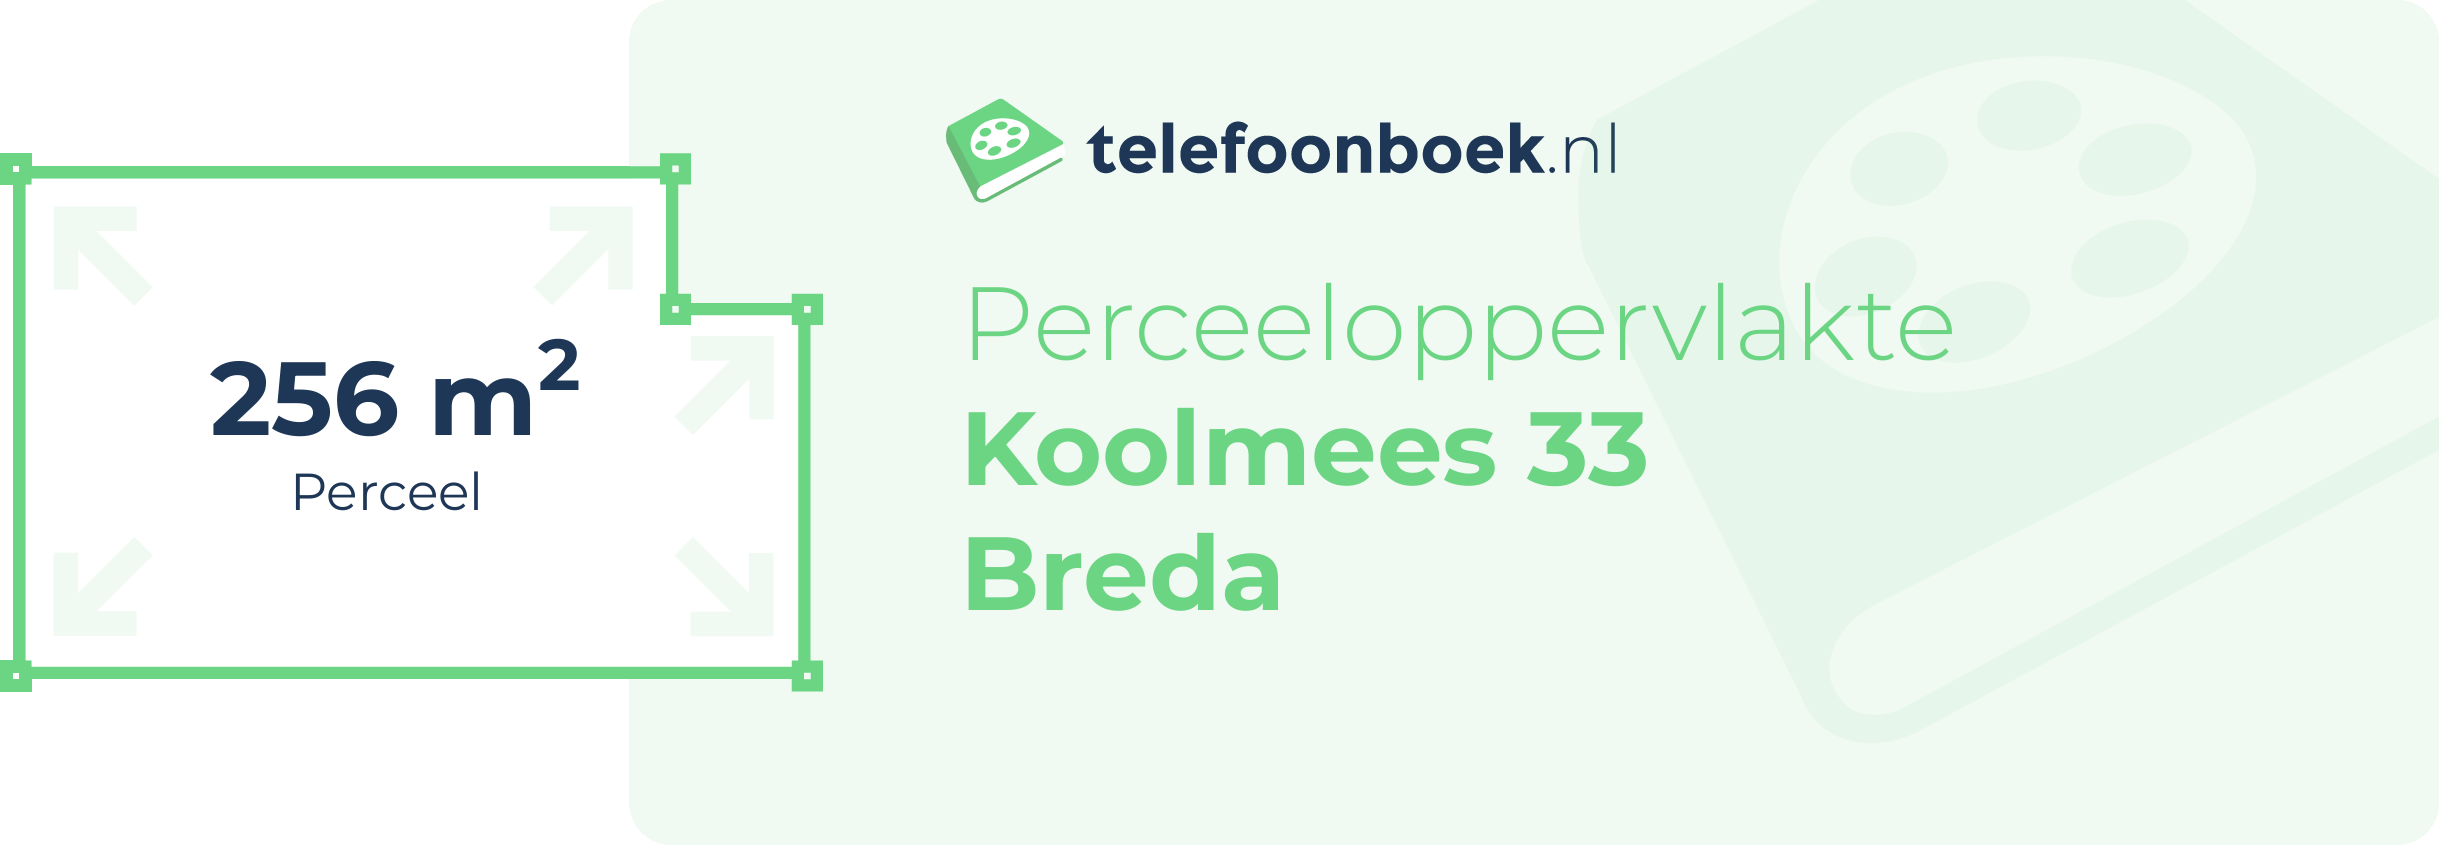 Perceeloppervlakte Koolmees 33 Breda